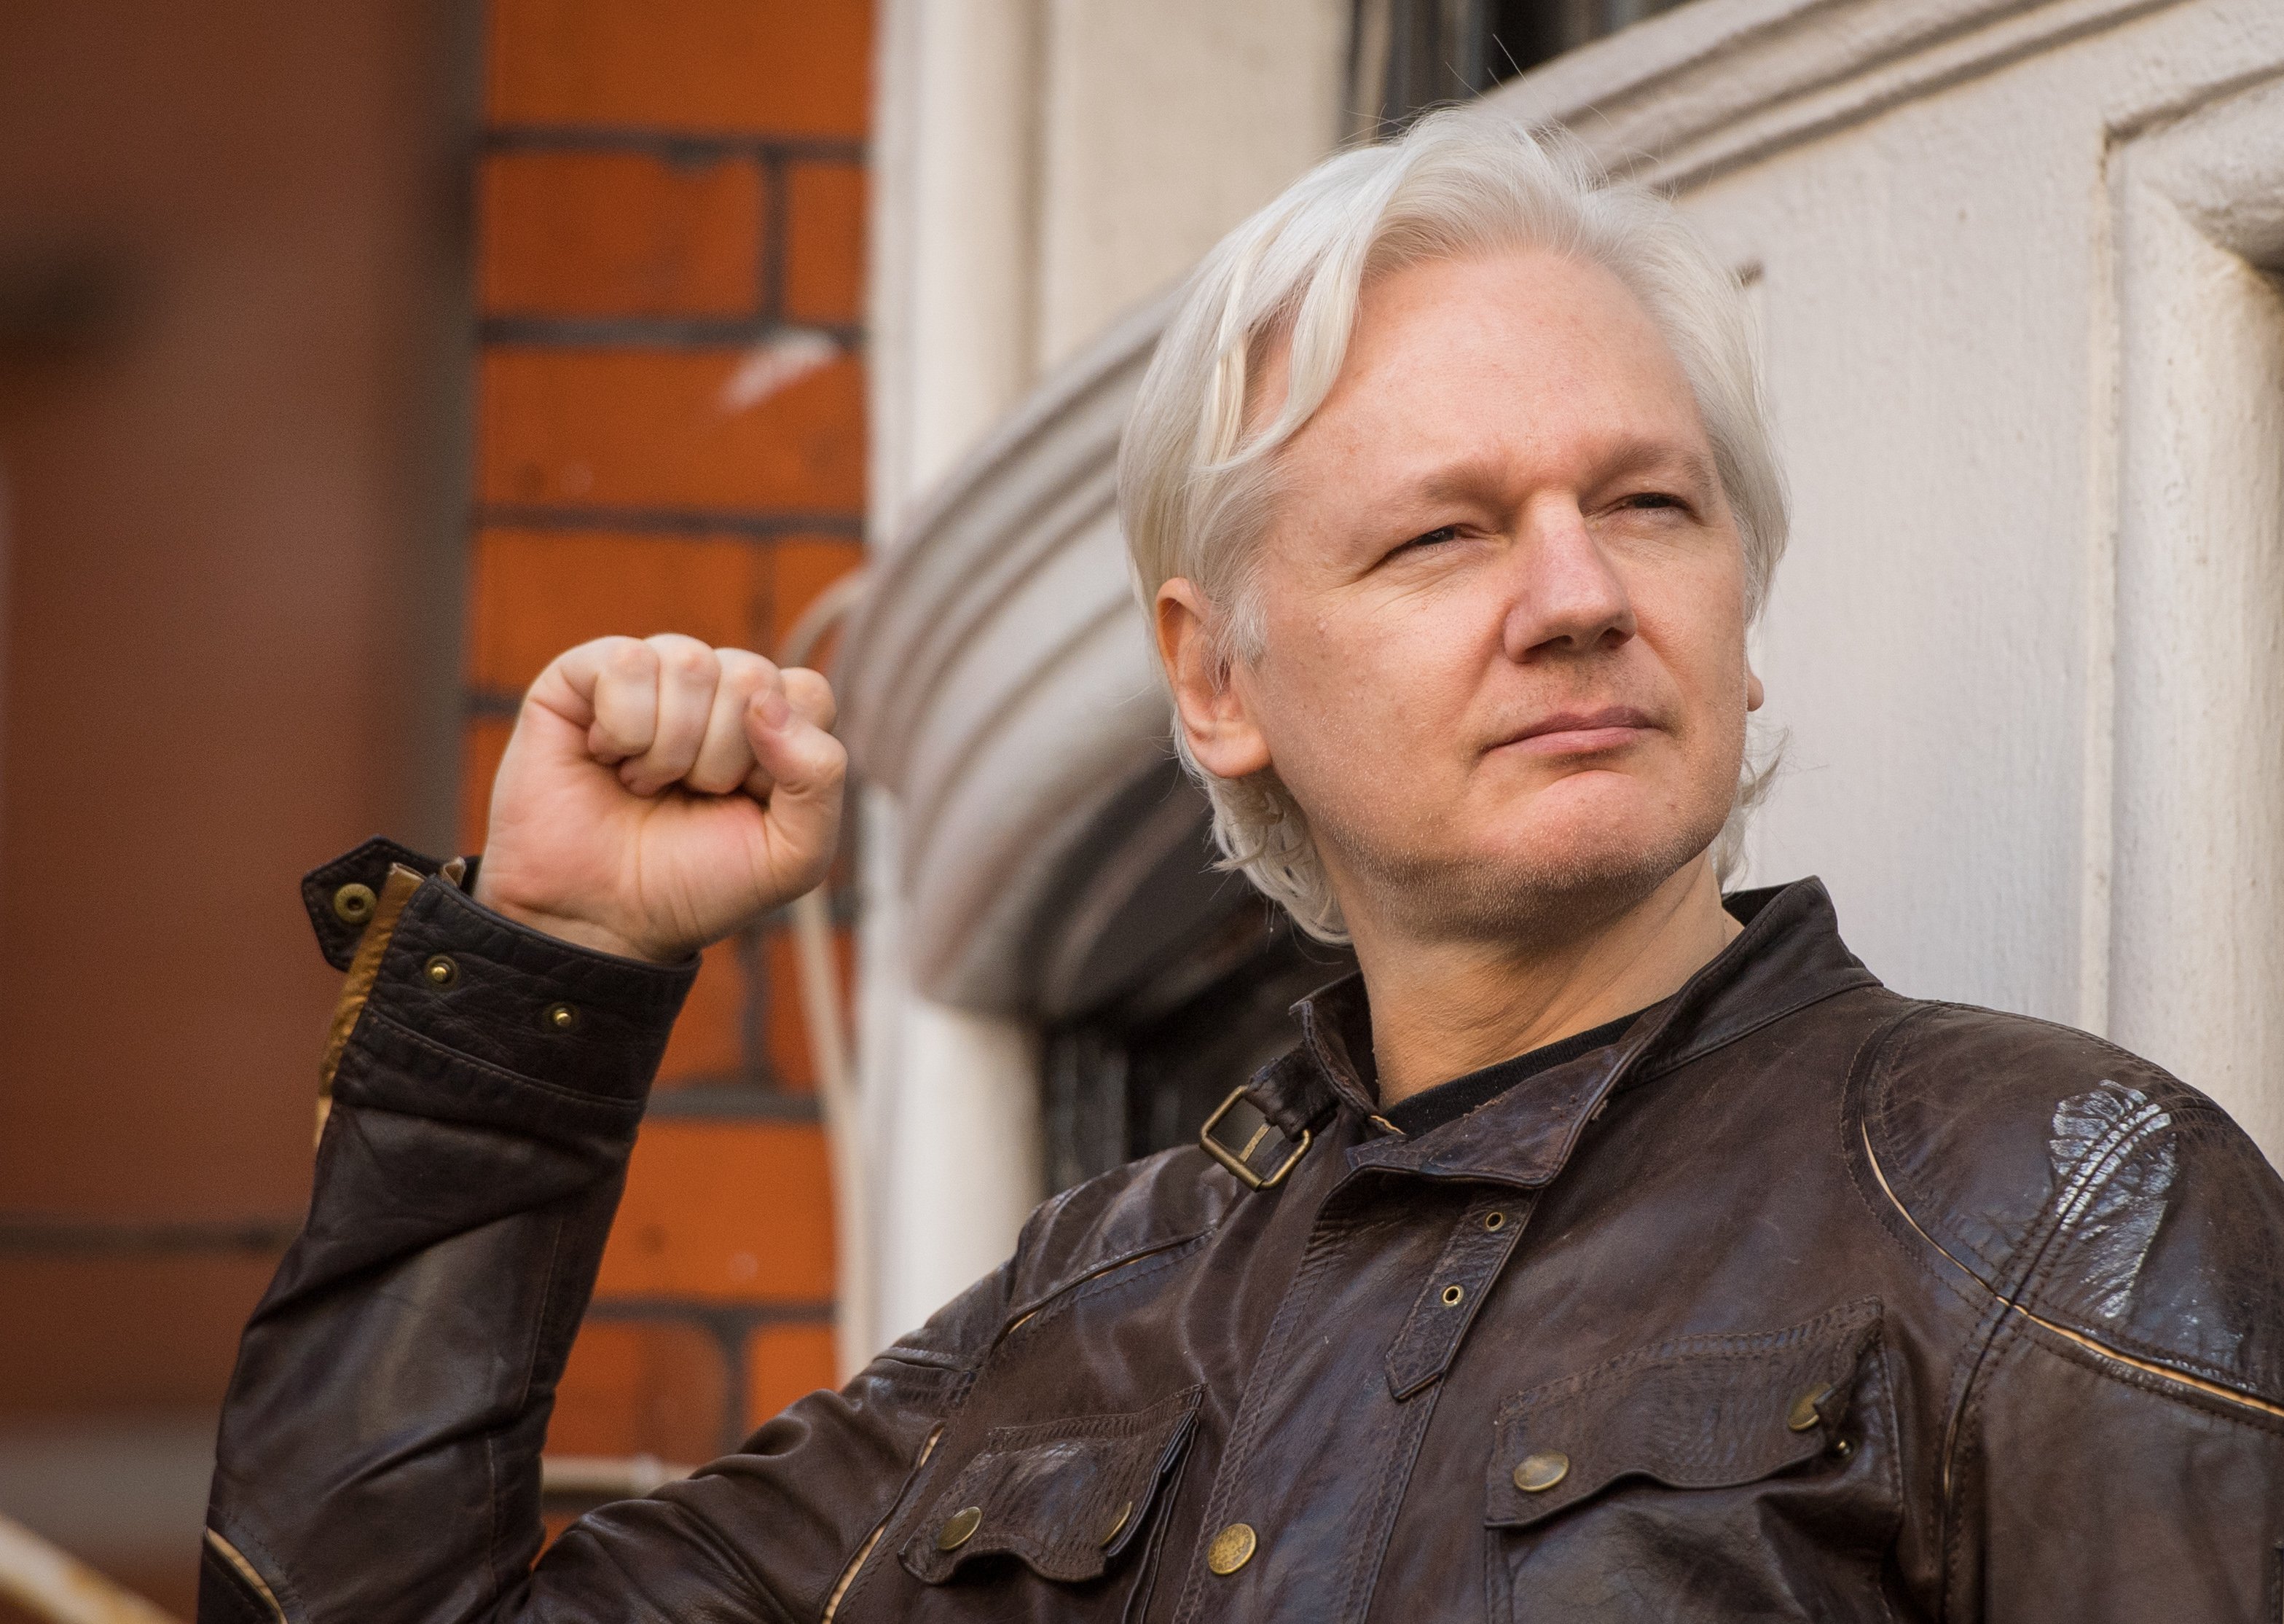 La amenaza de un artista si Julian Assange muere en la prisión: destruirá obras de Picasso, Rembrandt y Warhol